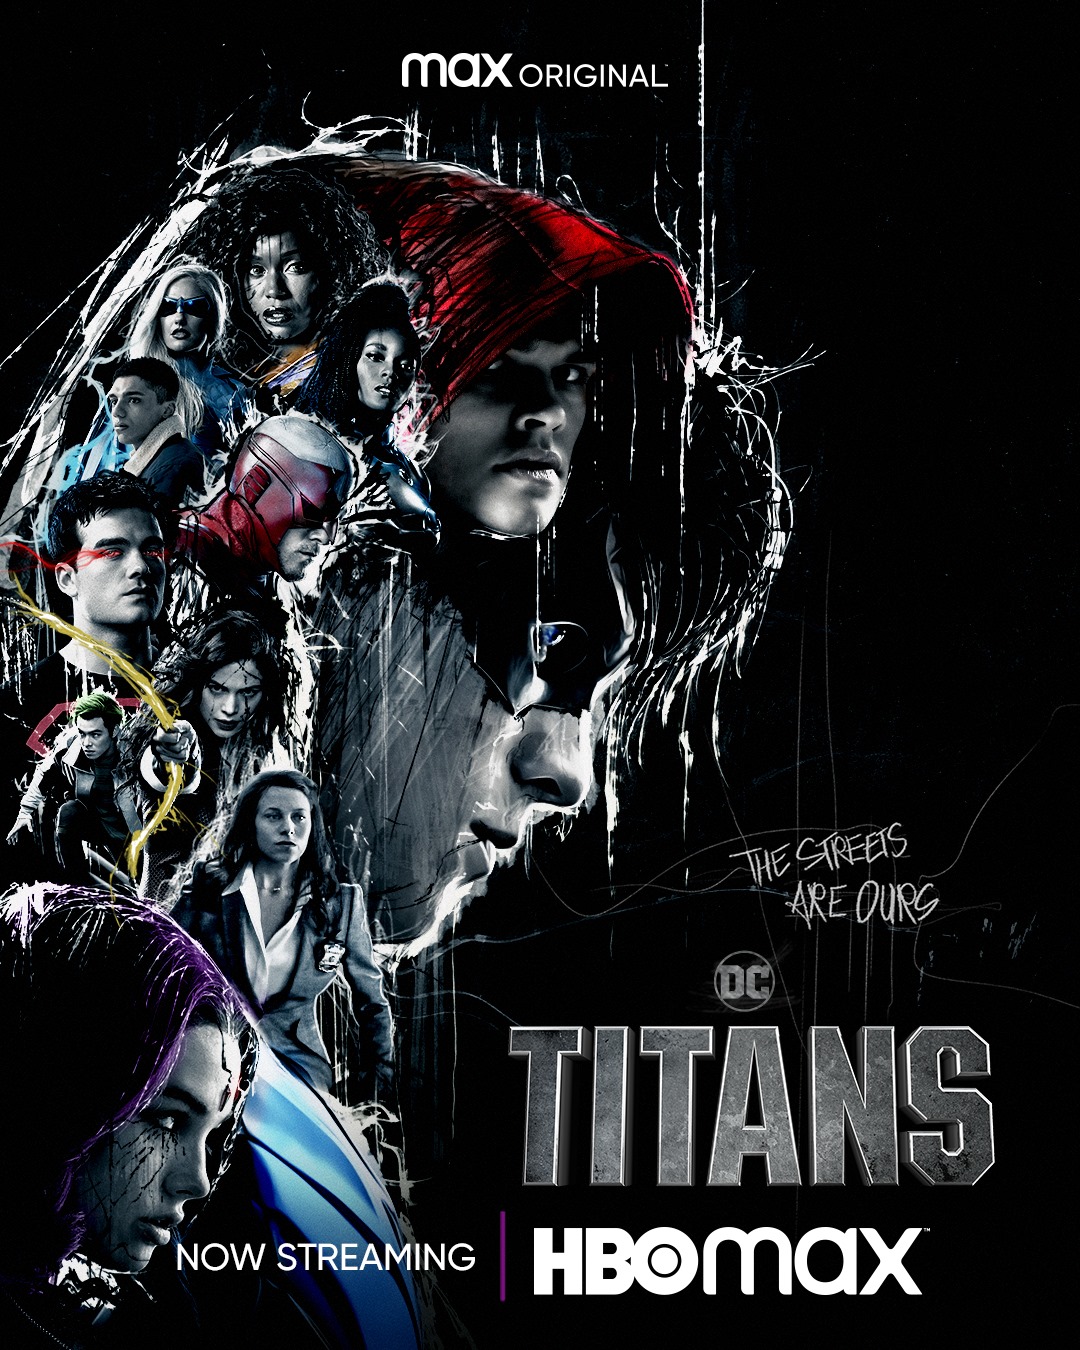 Titanes': el estreno de la temporada 3 en Netflix España